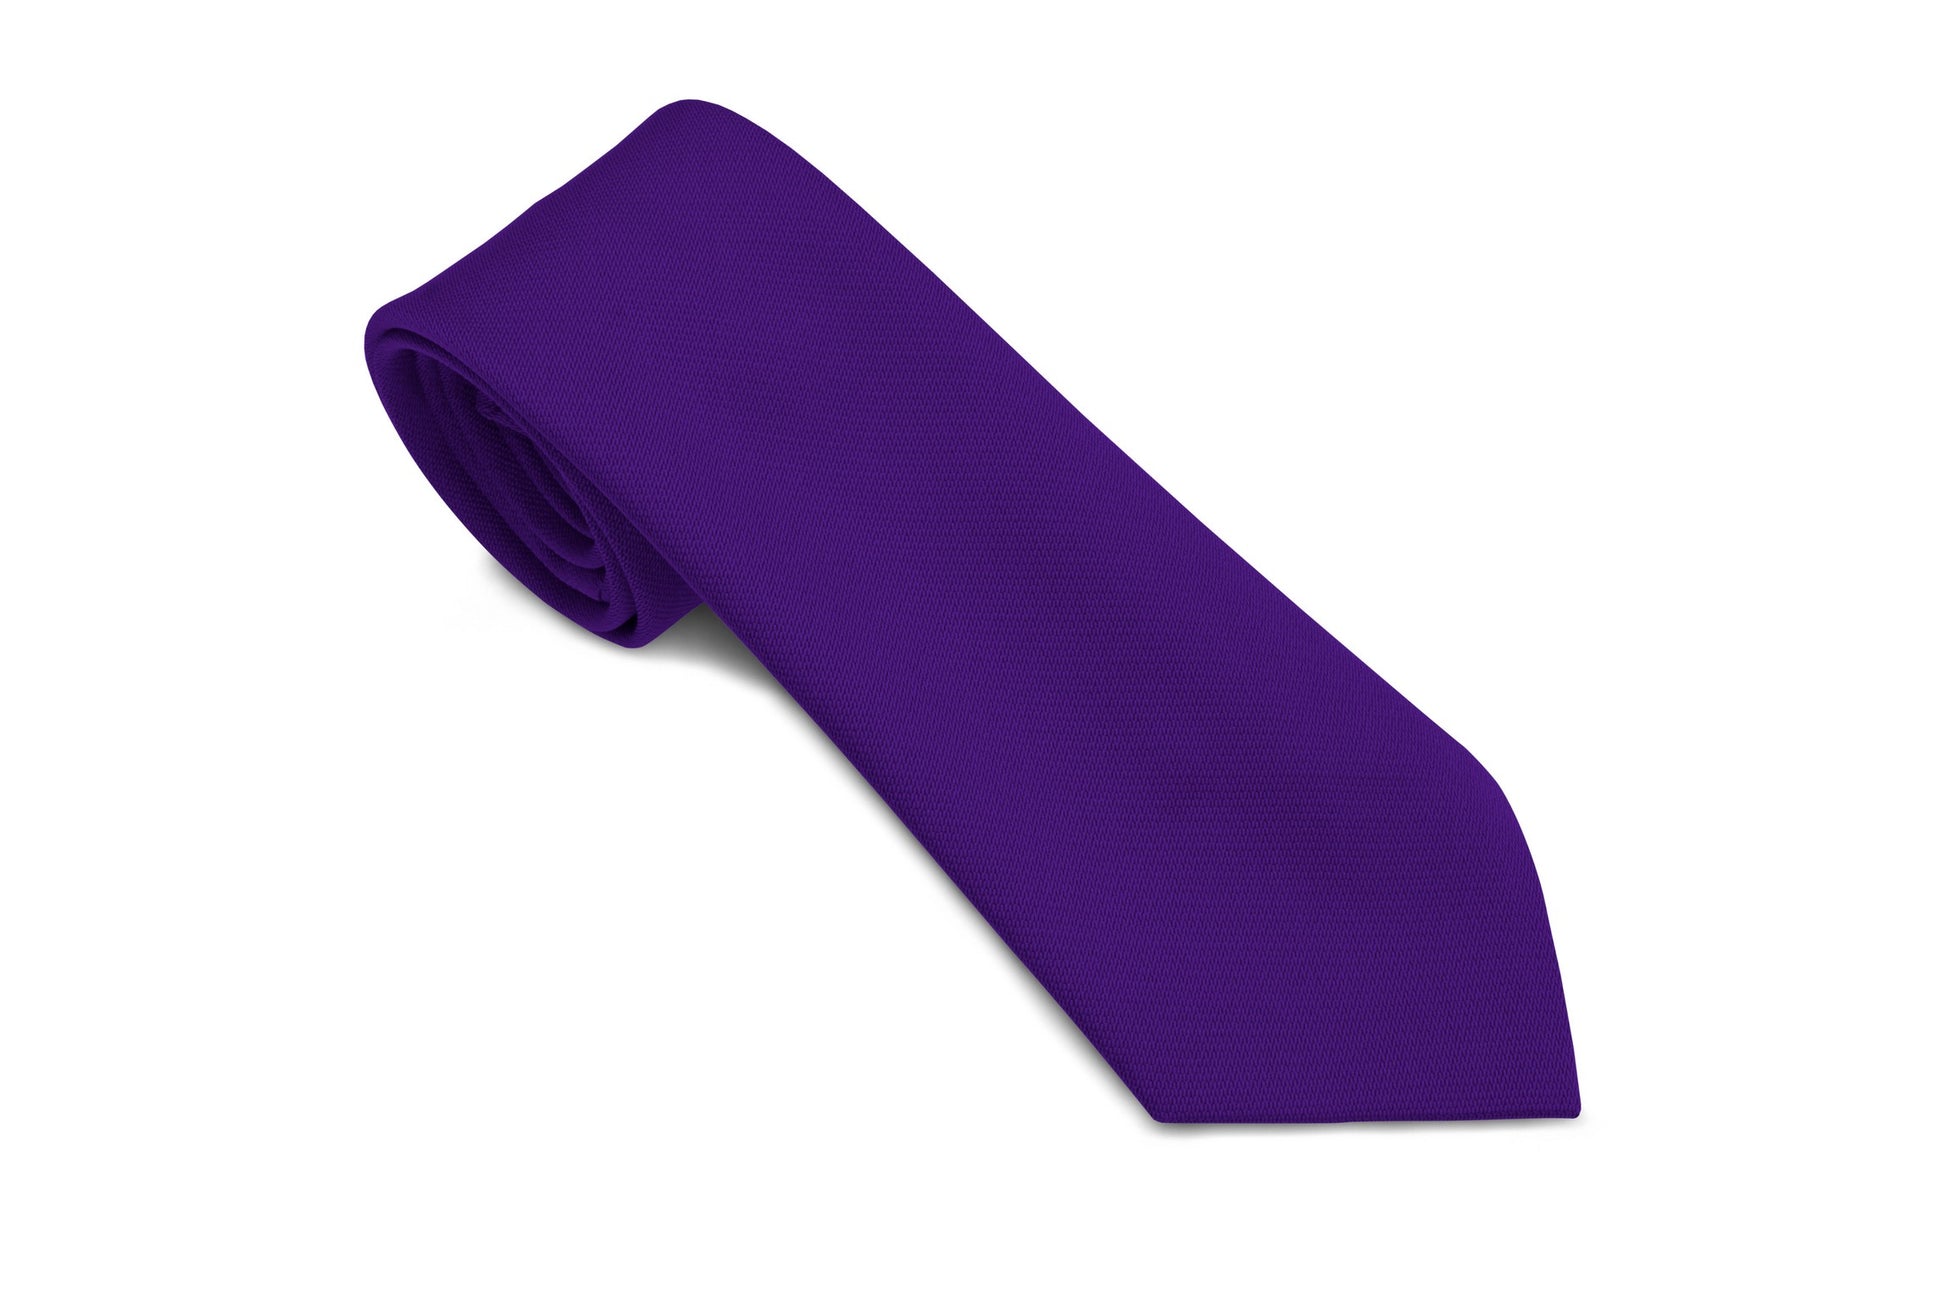 Stock Design Ties in Plain Purple (5401-9007) - Lynendo Trade Store